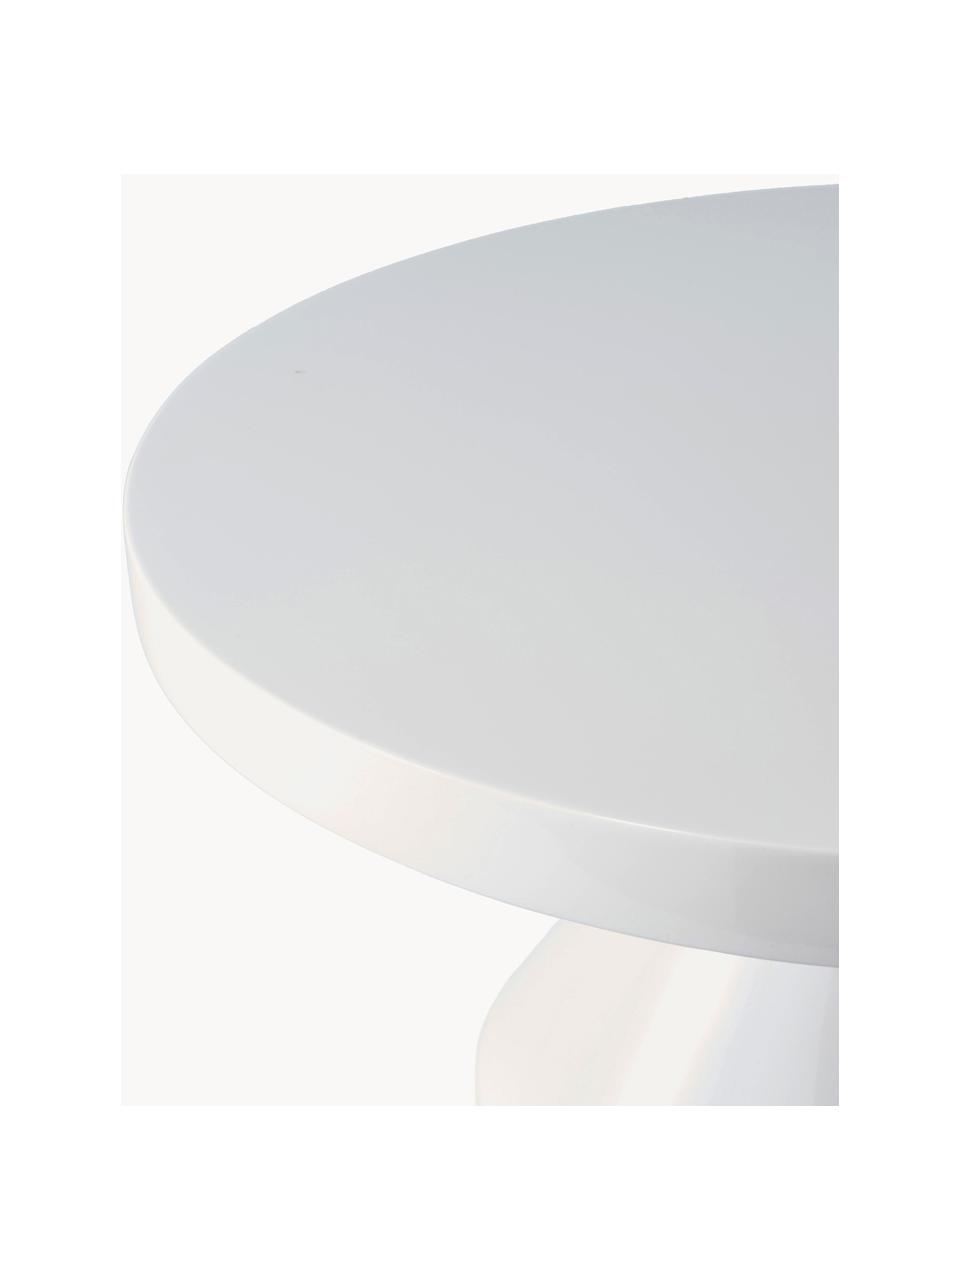 Table basse ronde Zig Zag, Plastique, laqué, Blanc, Ø 60 cm